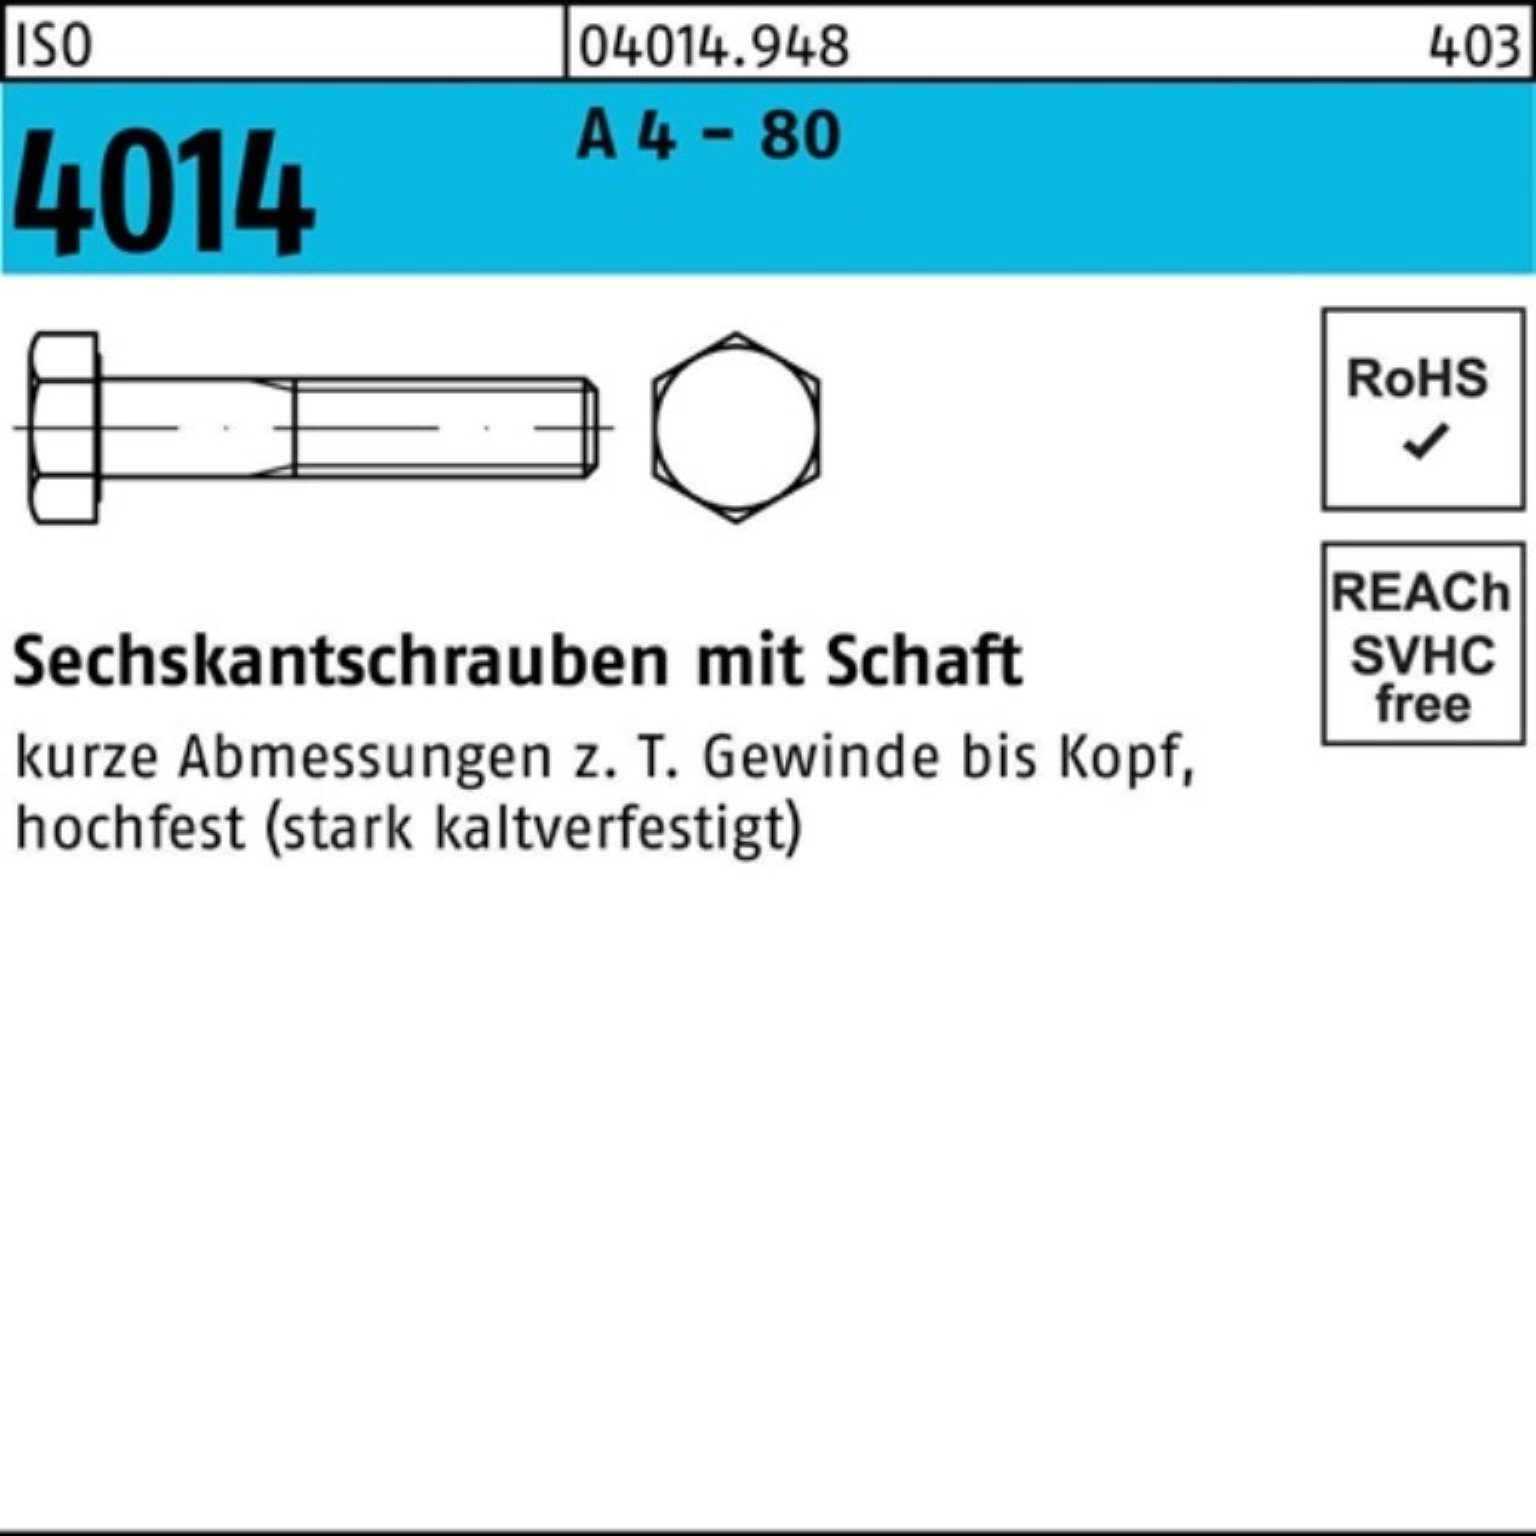 ISO A 1 Stüc Pack Sechskantschraube Schaft 80 190 Reyher 4014 Sechskantschraube 100er - 4 M24x